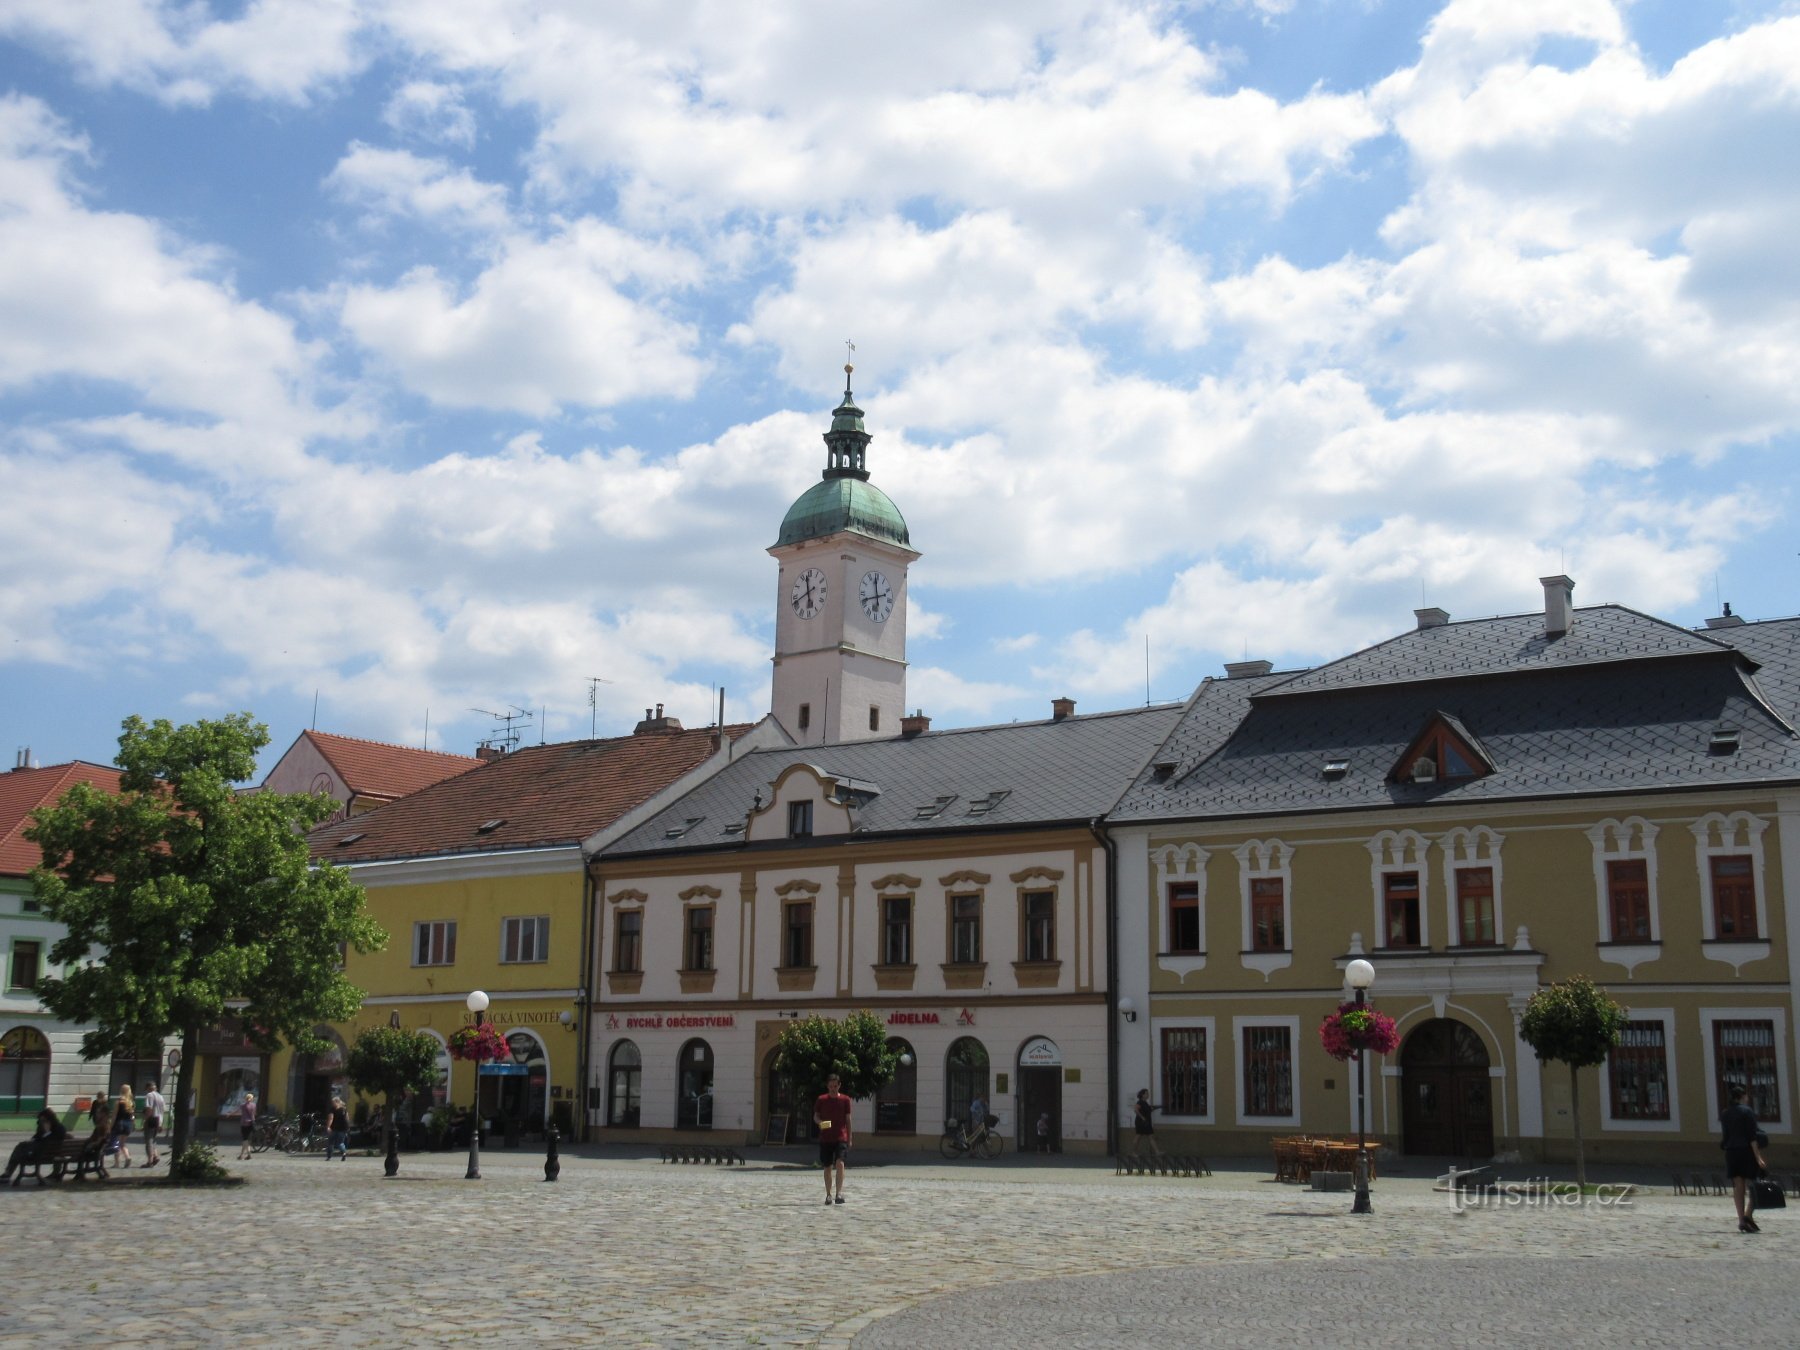 Mariánské náměstí - праворуч будинок У Сови, за вежею старої ратуші.